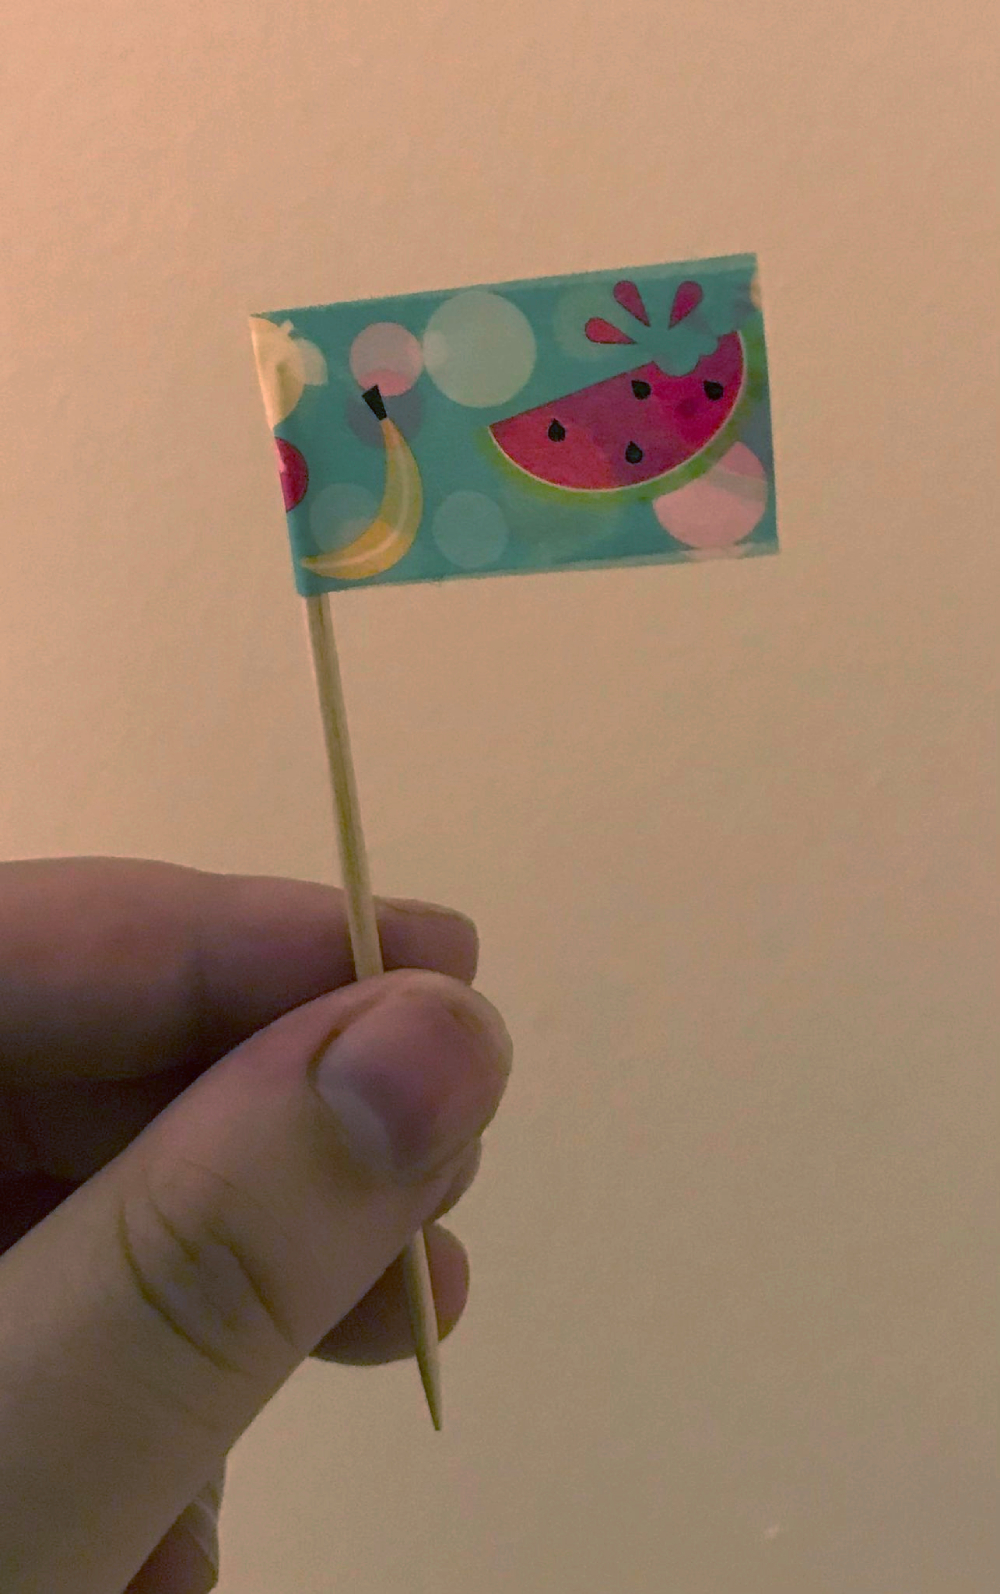 A cute little flag on a toothpick! It's got fruit on it!